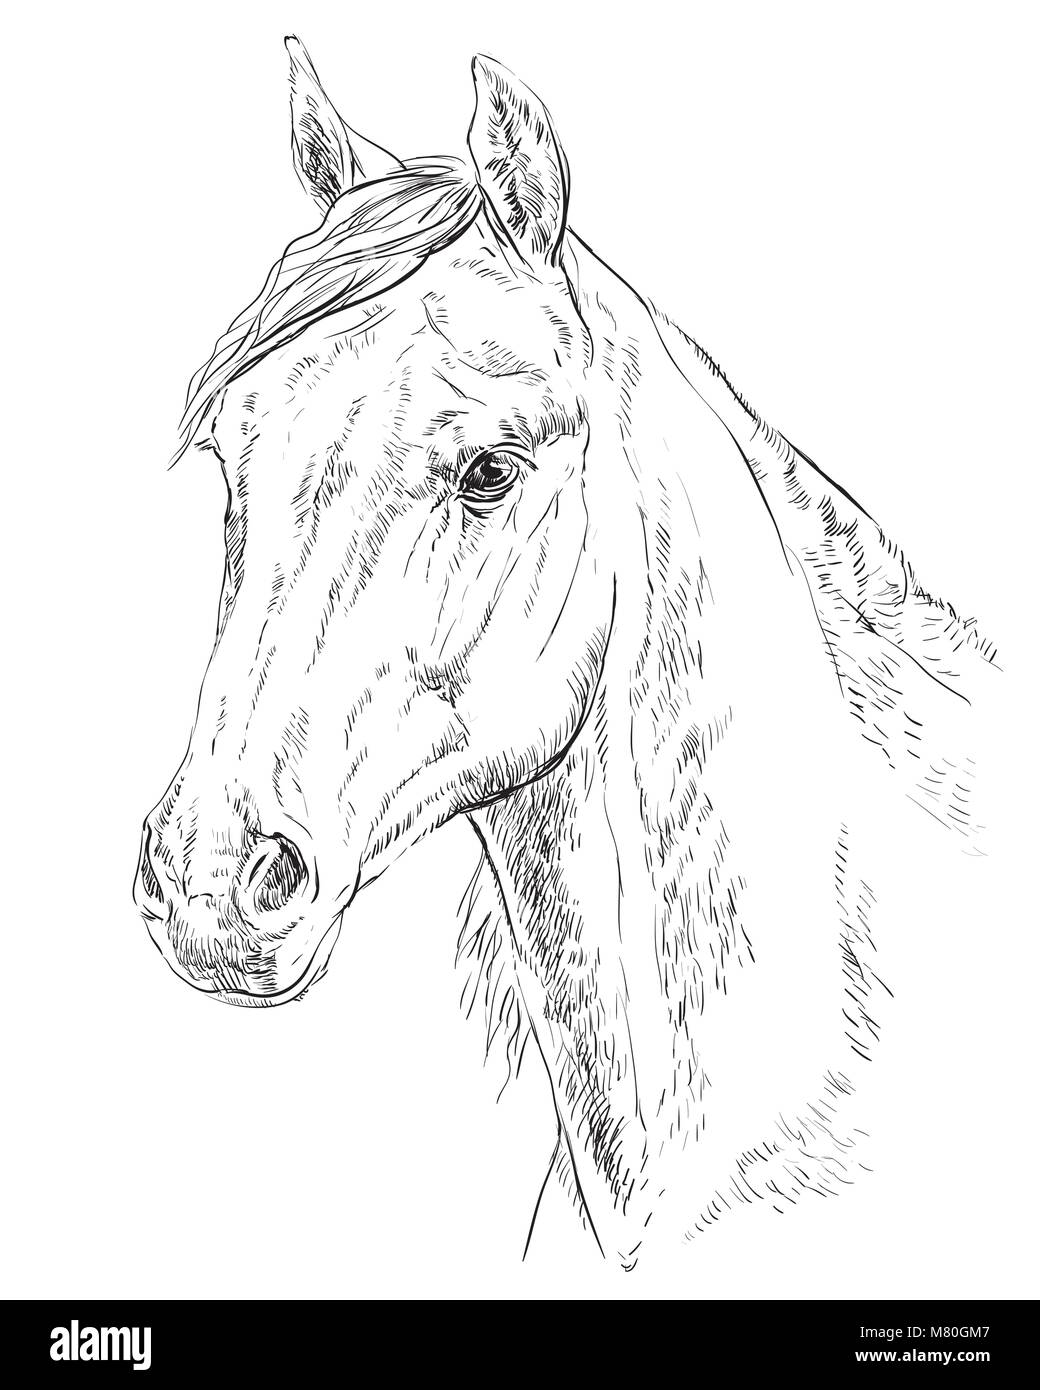 Arabian Horse Portrait. Pferdekopf im Profil in Schwarzweiß Farbe auf weißem Hintergrund. Vektor hand Zeichnung Abbildung Stock Vektor